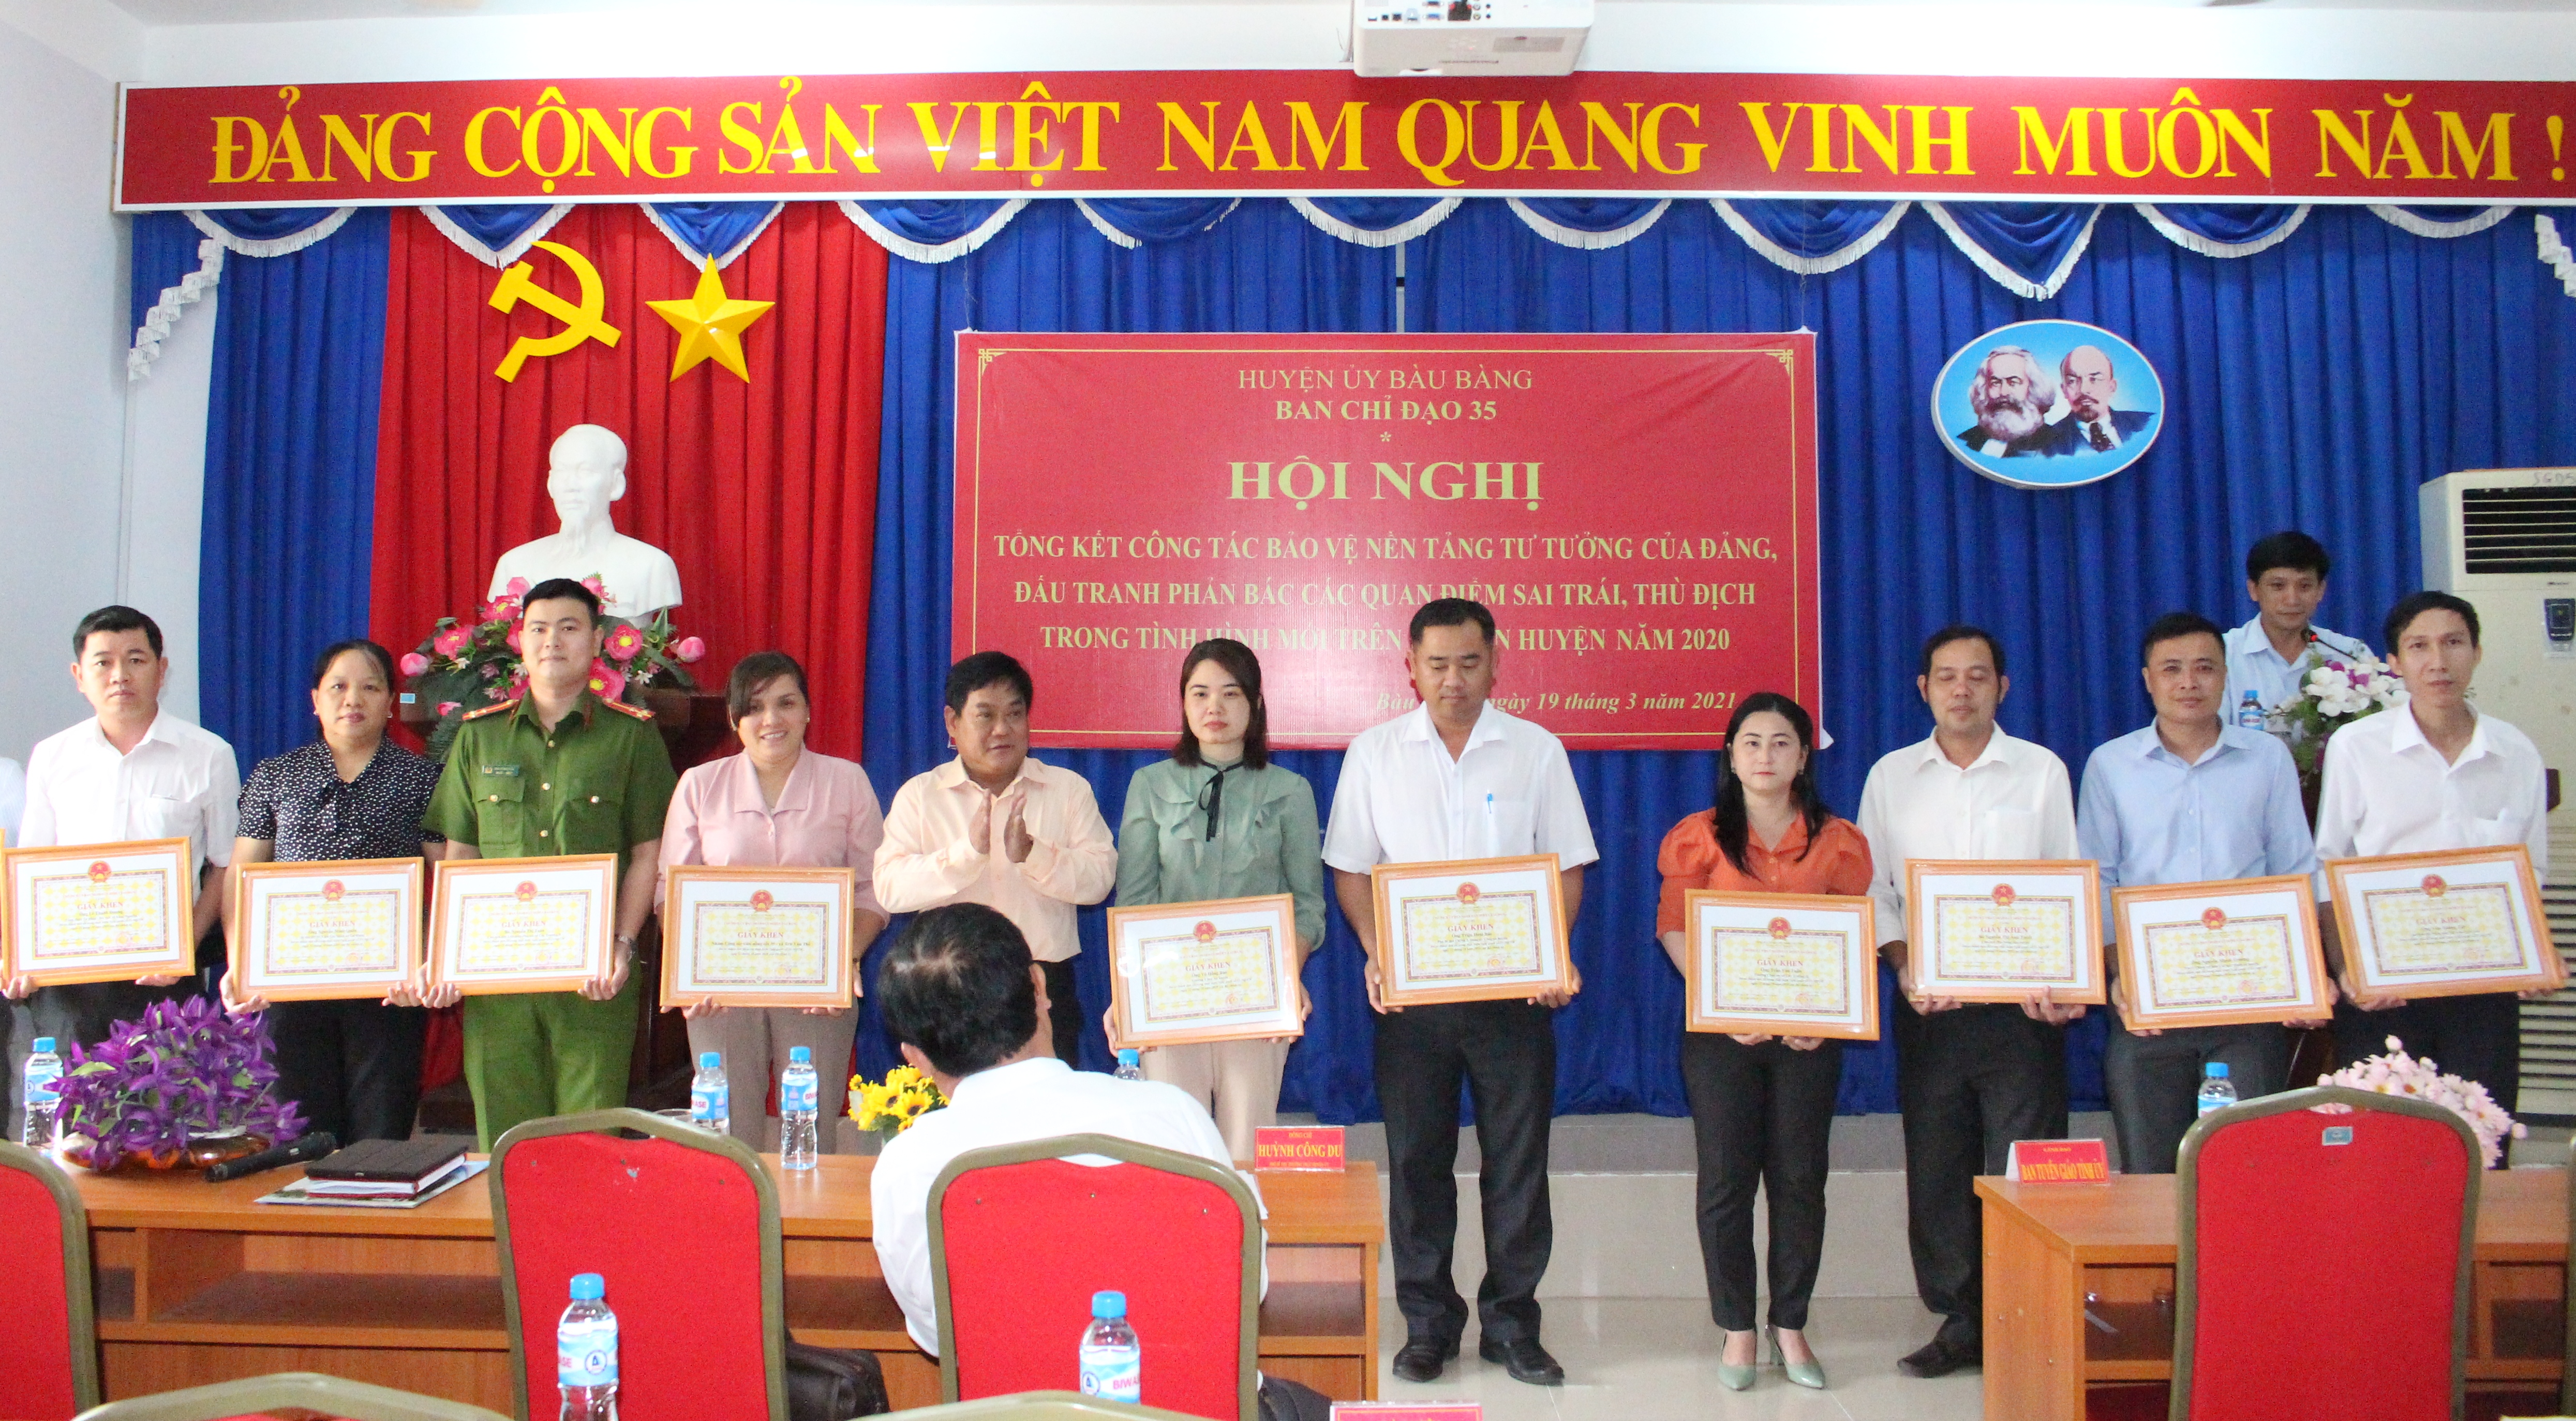 Ông Võ Thành Giàu - Chủ tịch UBND huyện trao giấy khen cho các cá nhân có thành tích xuất sắc